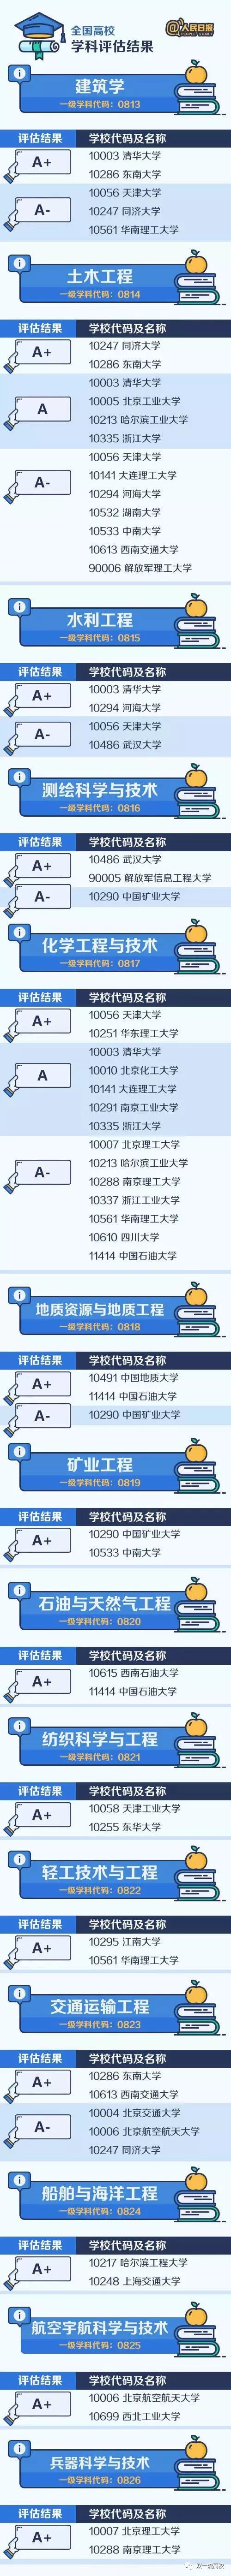 中国大学最顶尖的学科名单公布，快看你家学校有多少专业上榜？
                
                 